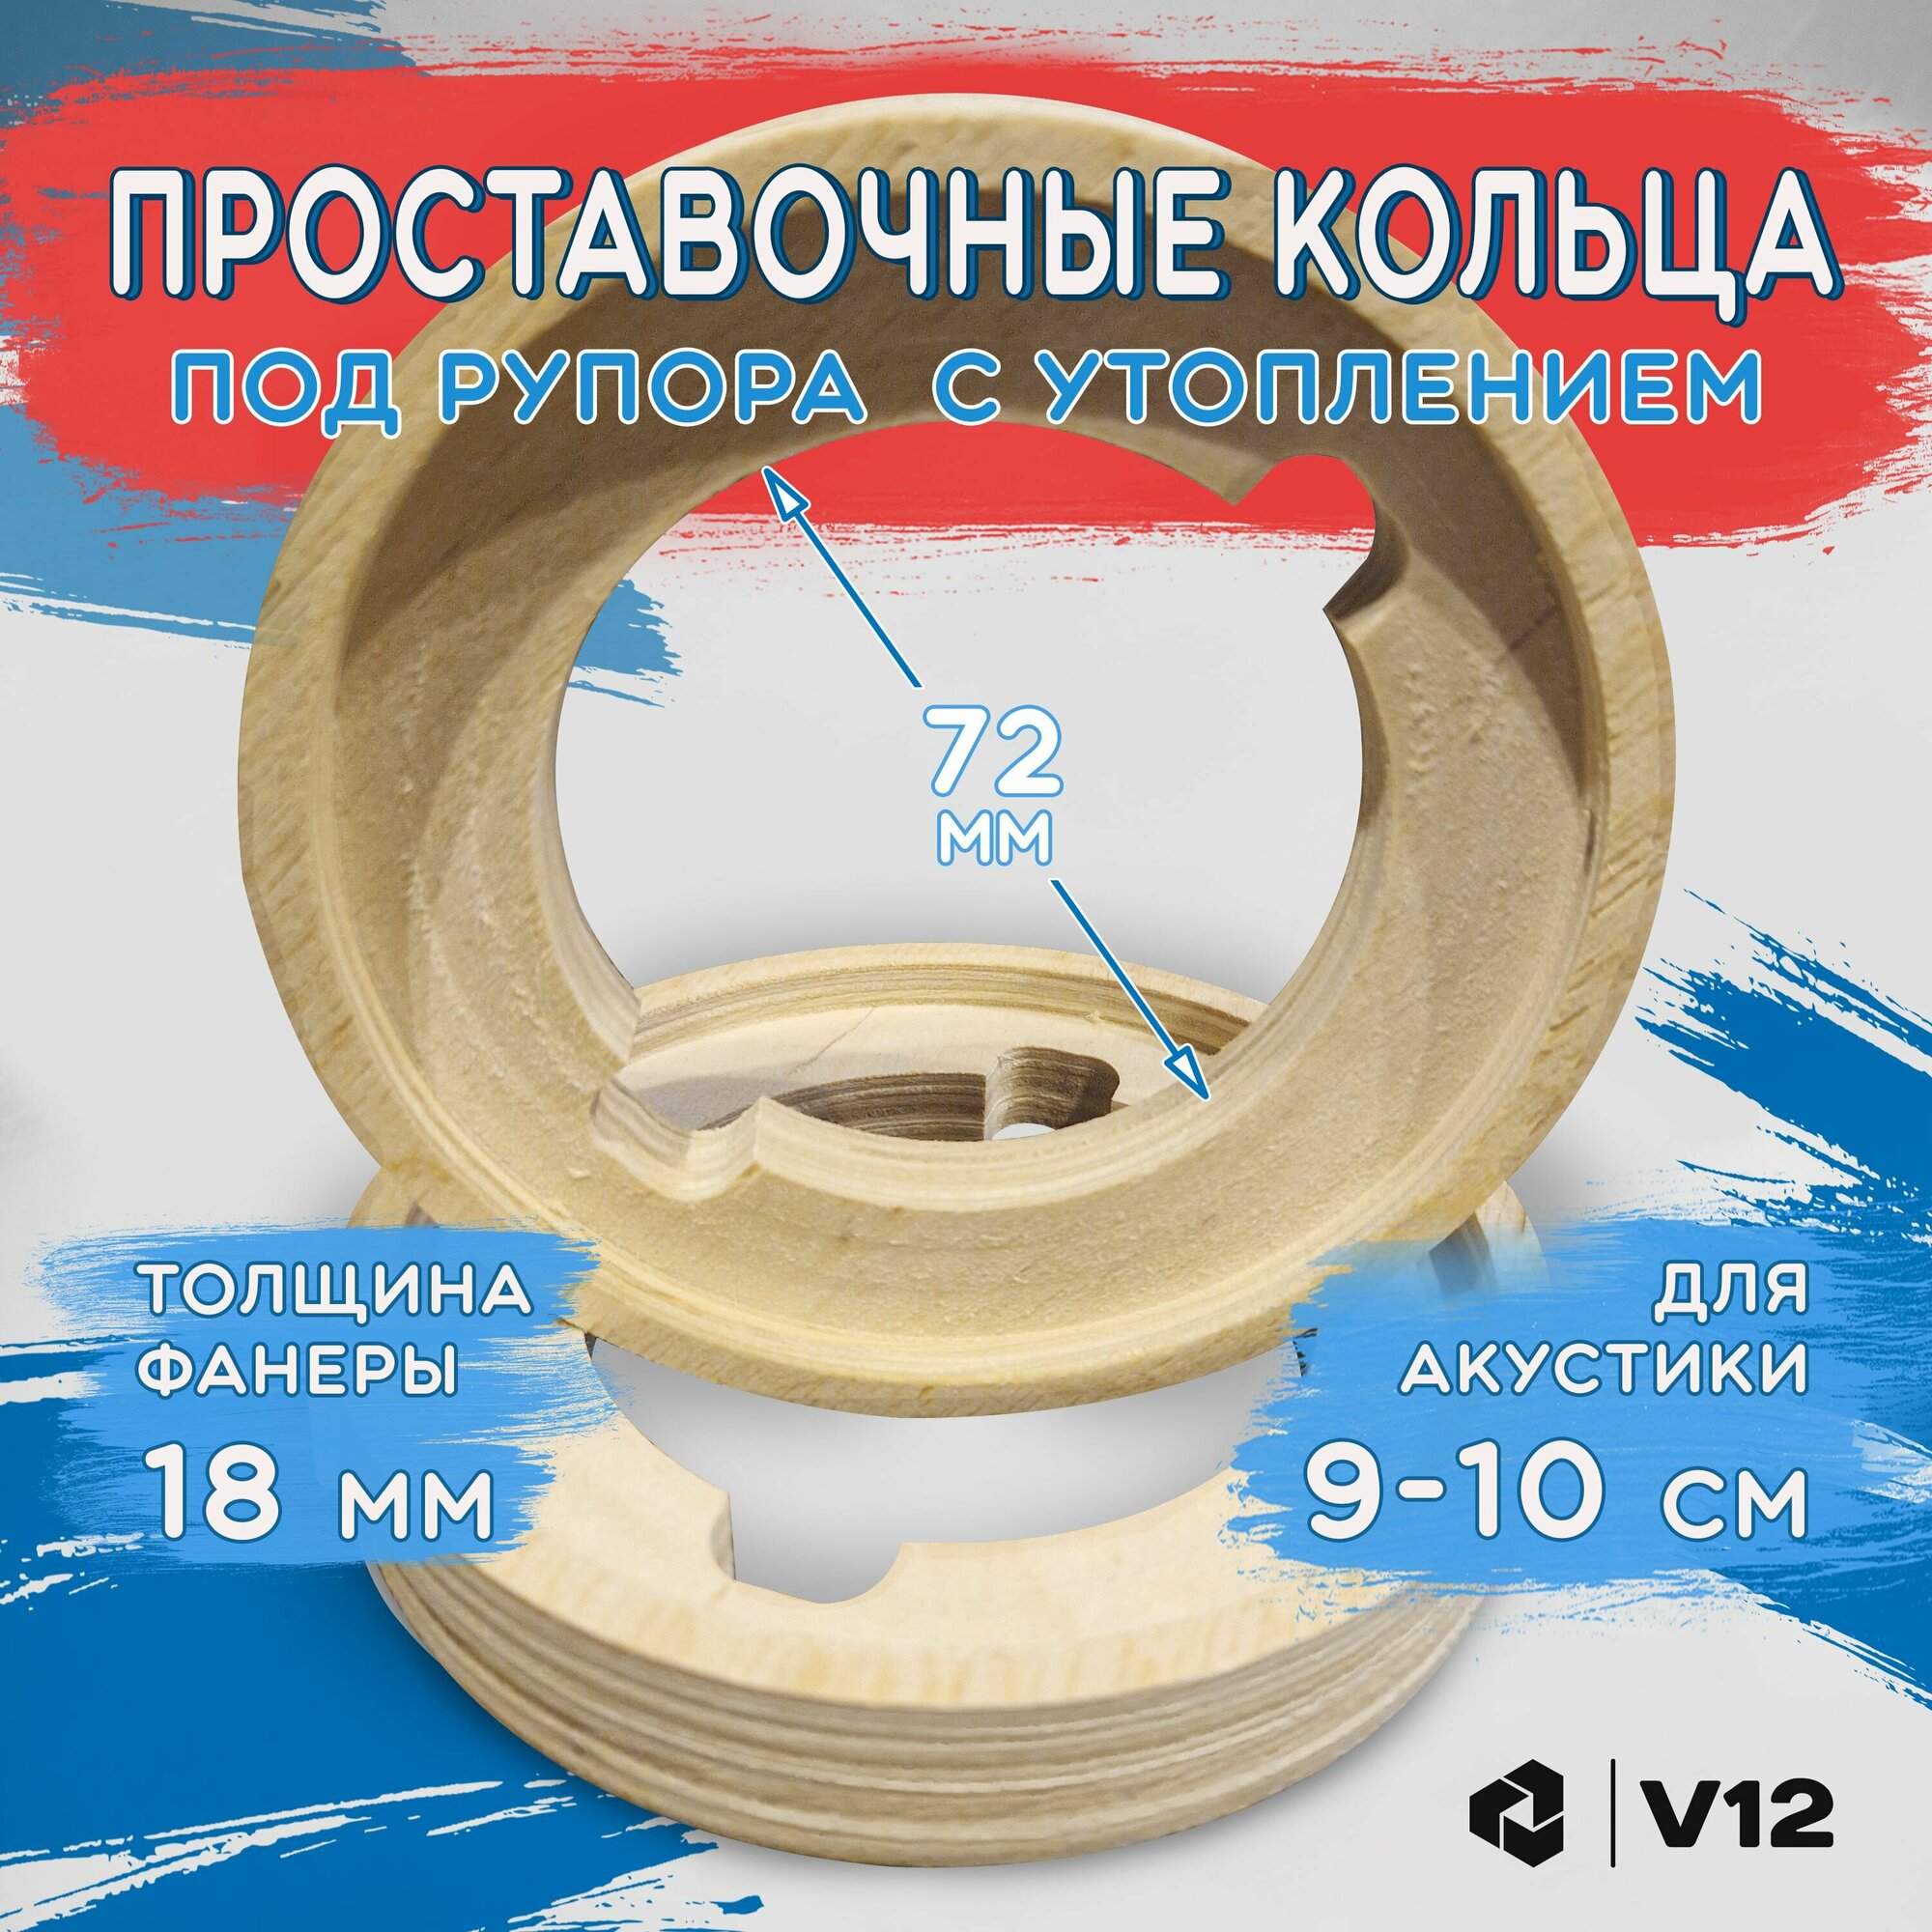 Проставочные кольца под рупора T-34 фанера